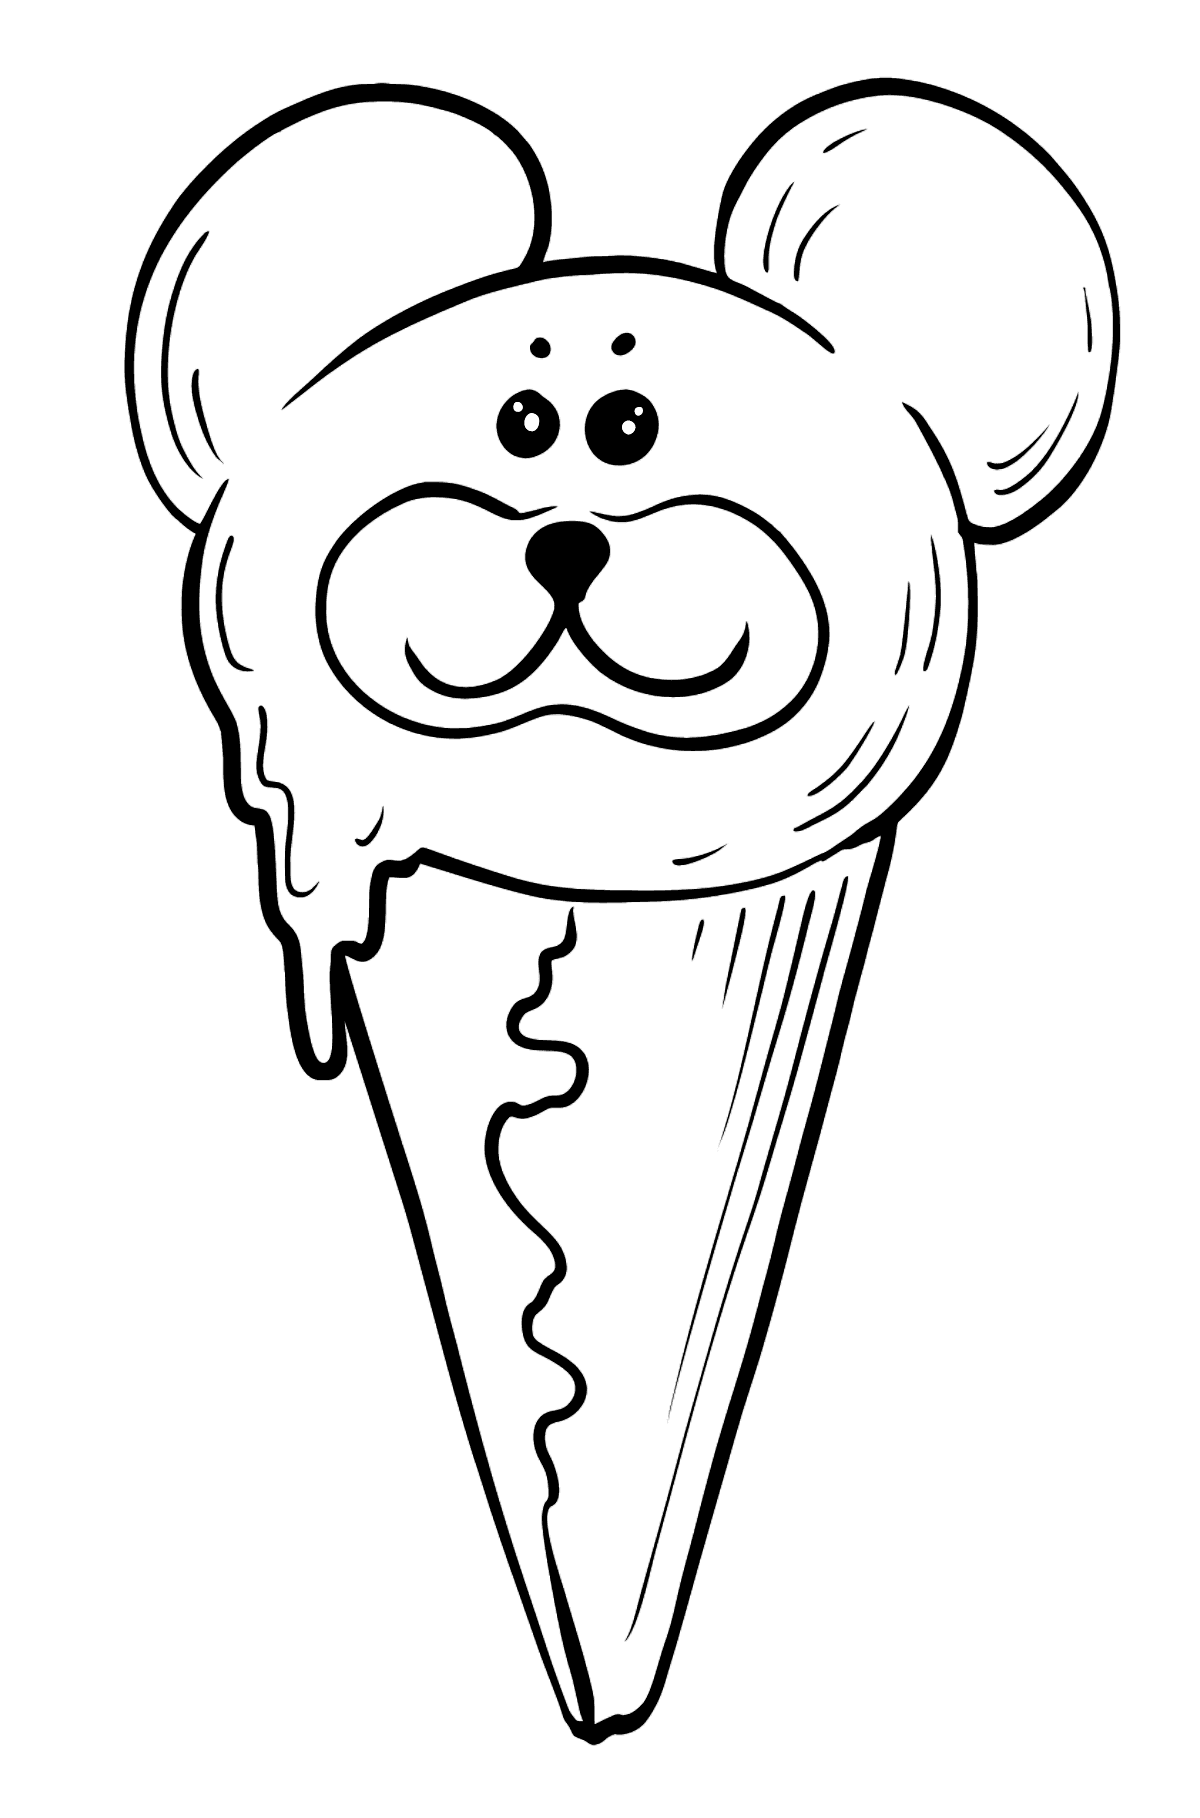 Desenho para colorir de sorvete - urso de chocolate com olhos - Imagens para Colorir para Crianças